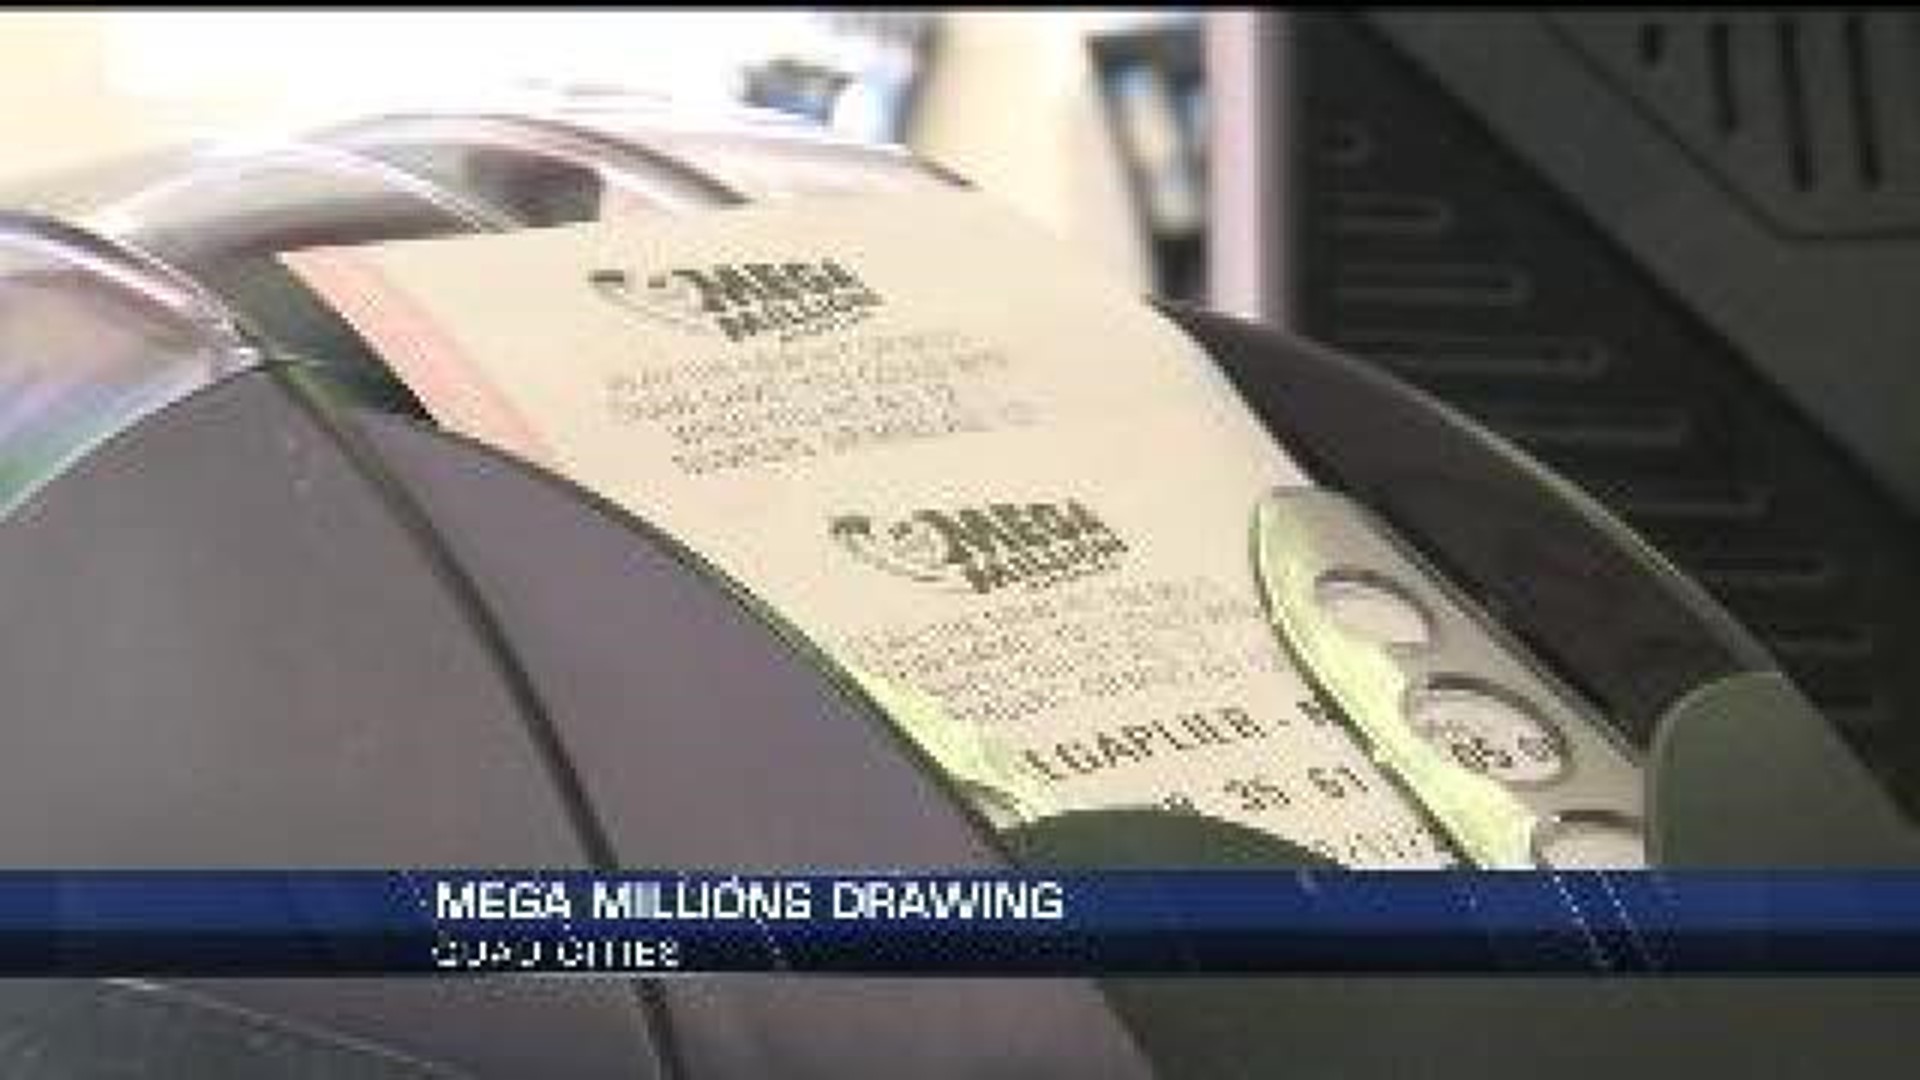 Quad Citians dream big upon Mega Millions drawing